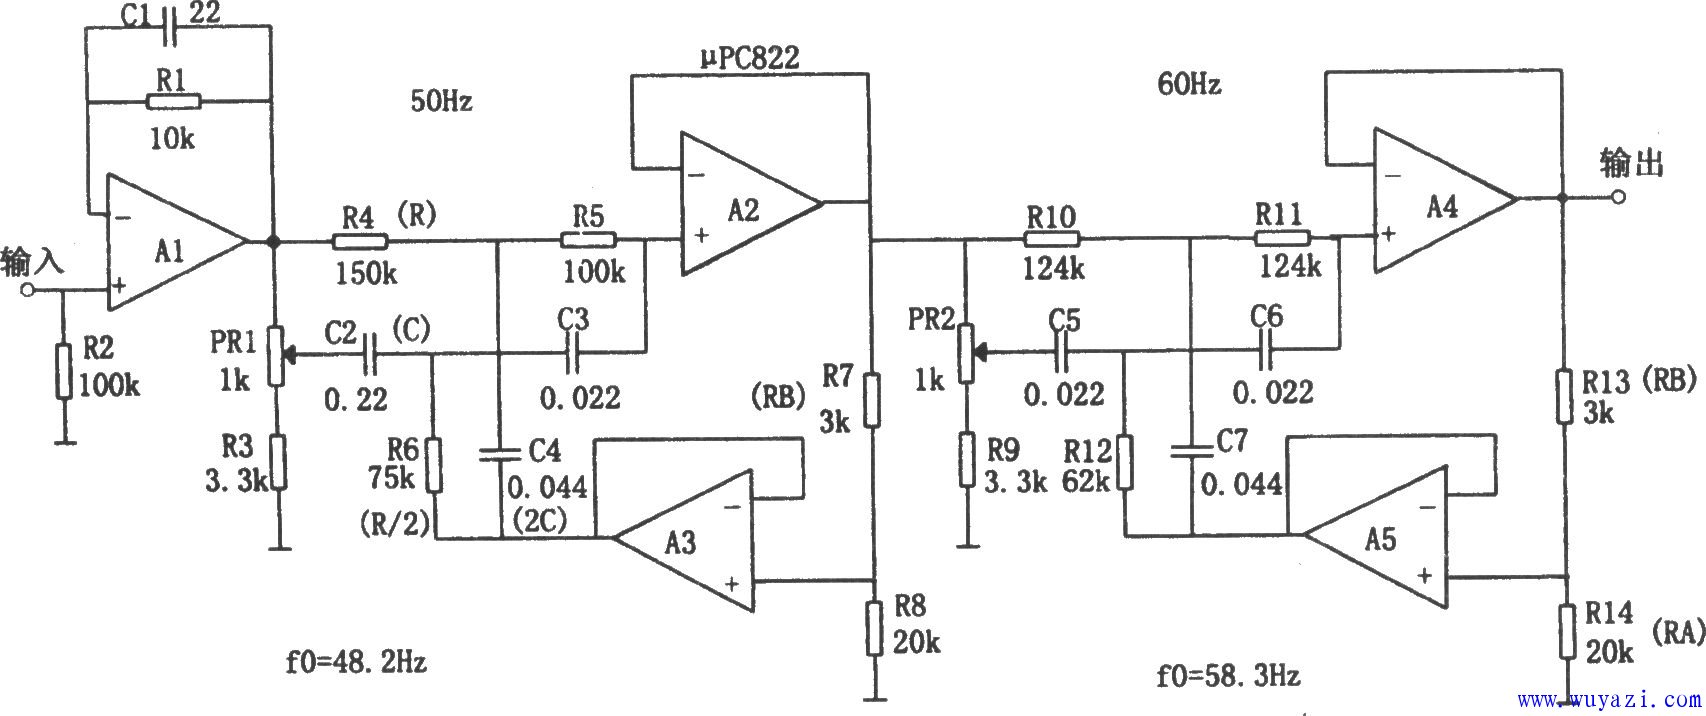 電源頻率雜訊濾波器(μPC822)